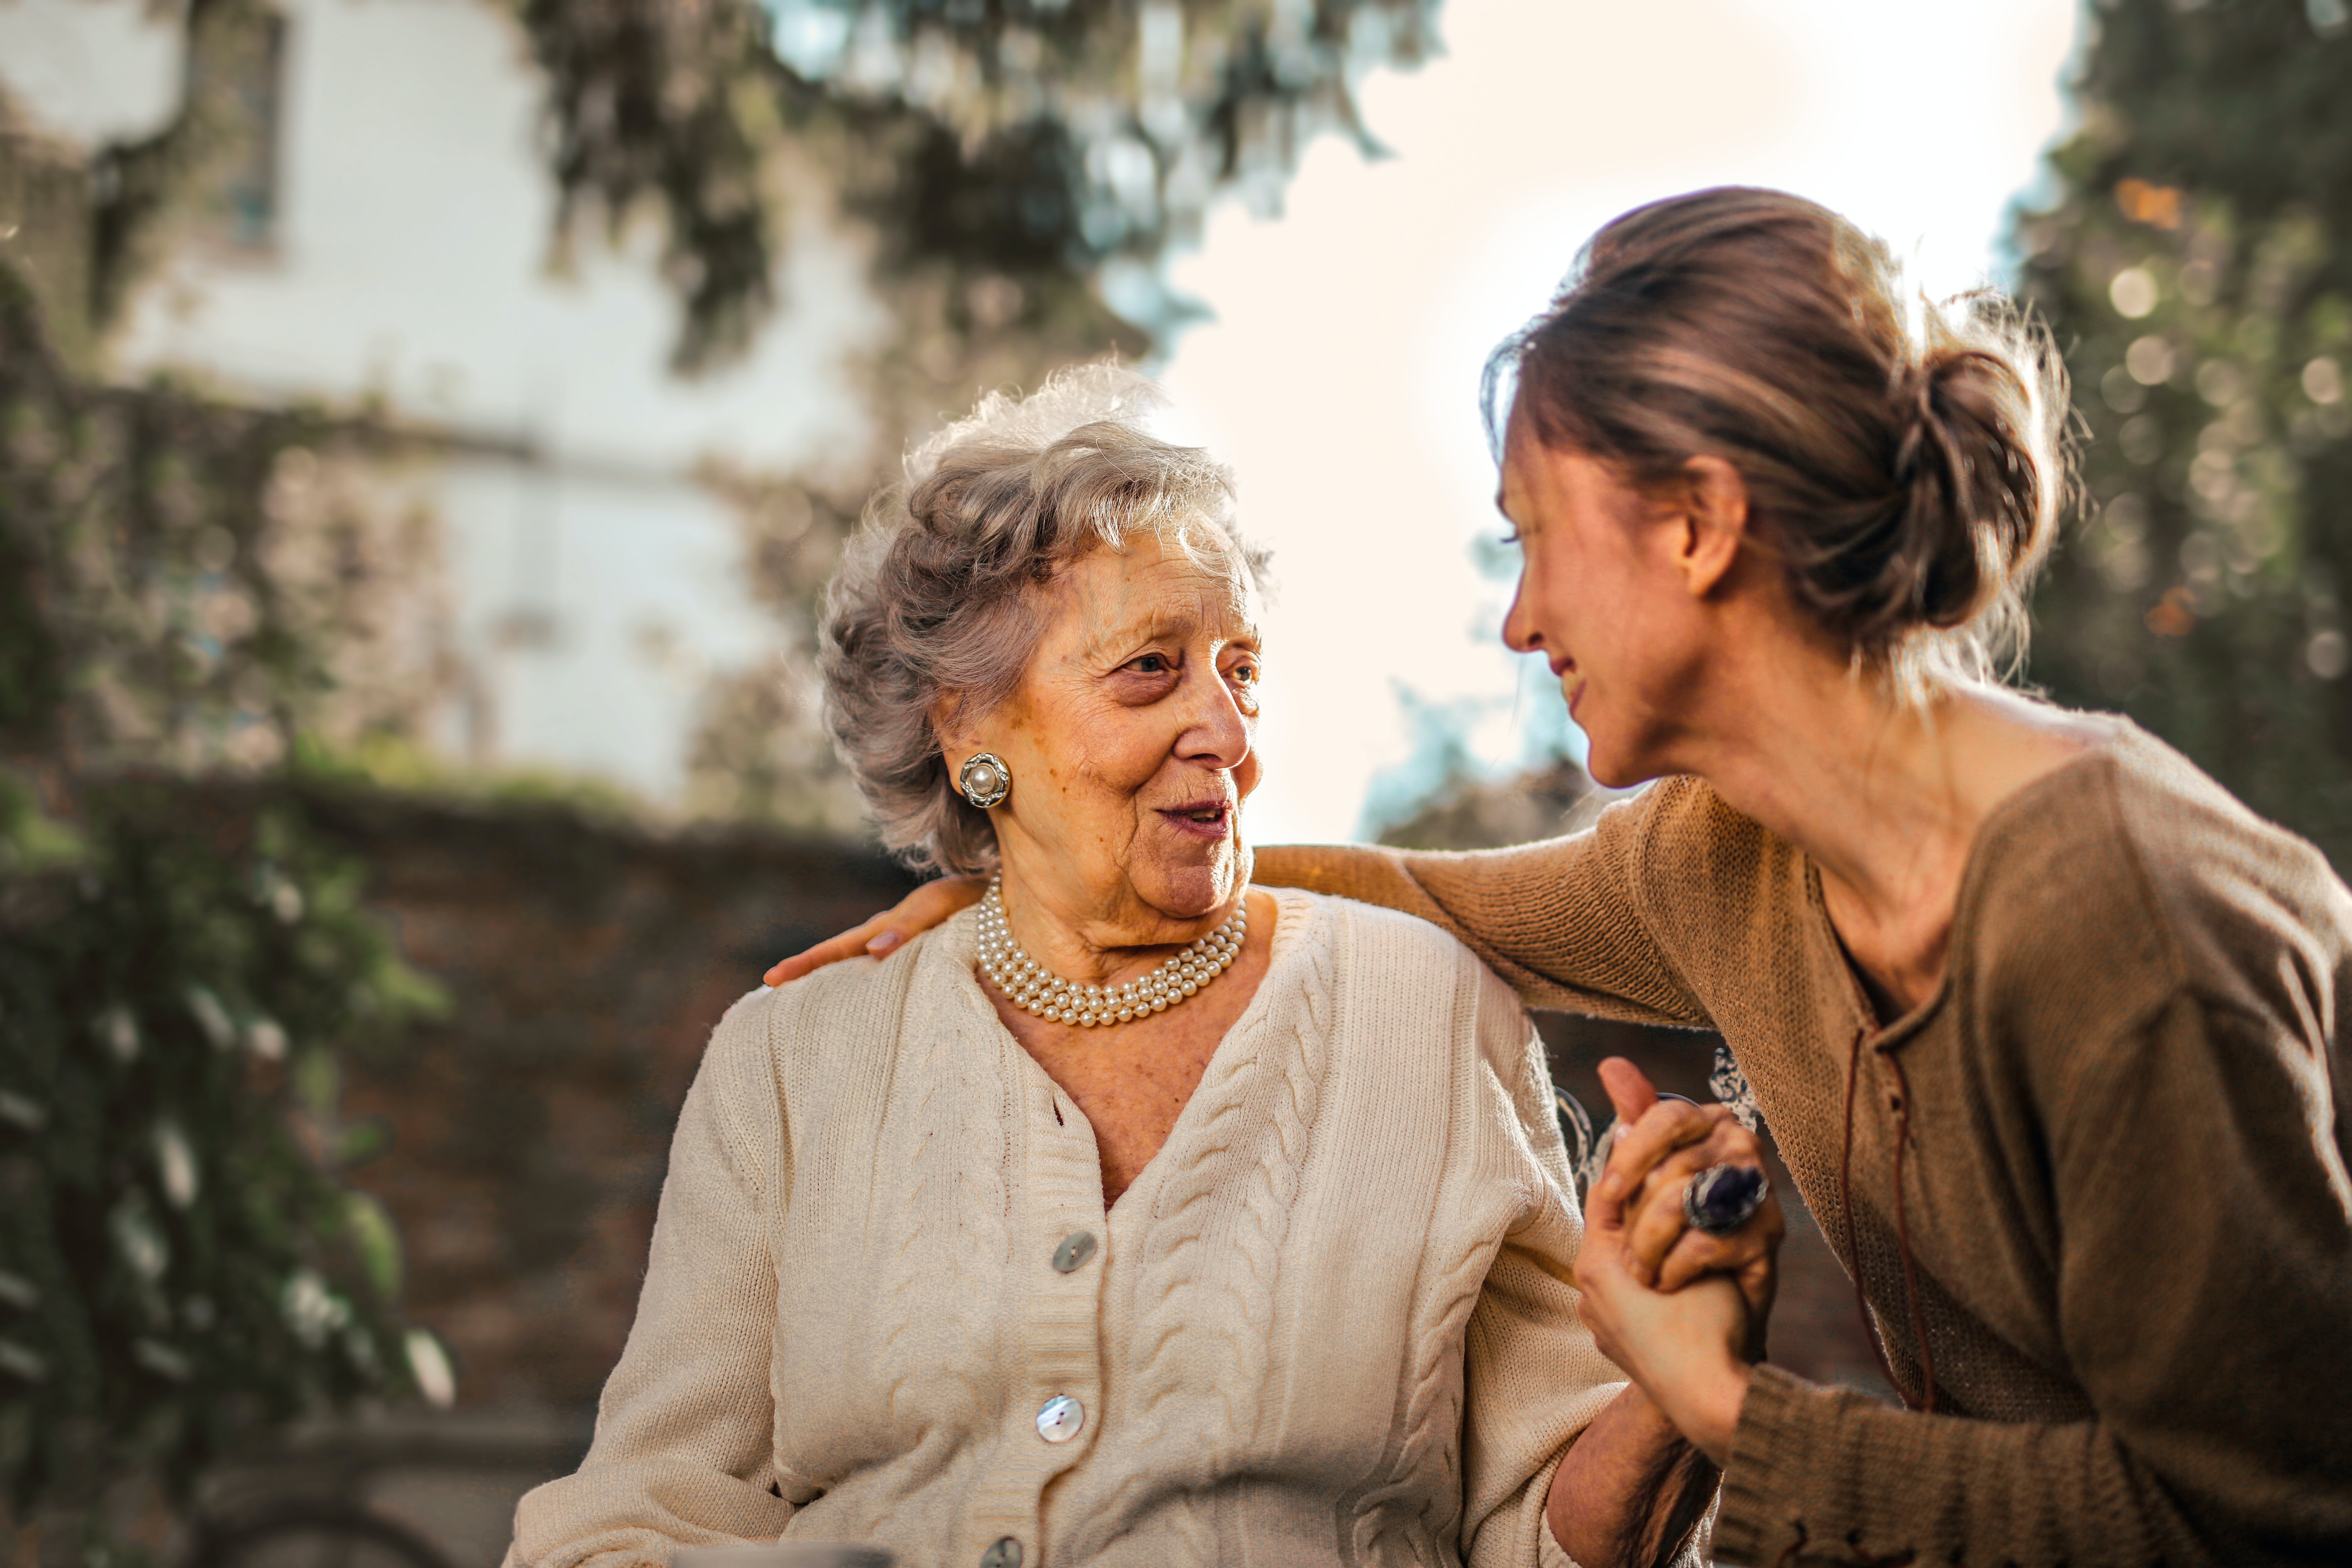 Eine ältere Frau im Gespräch mit einer jungen Frau | Quelle: Pexels